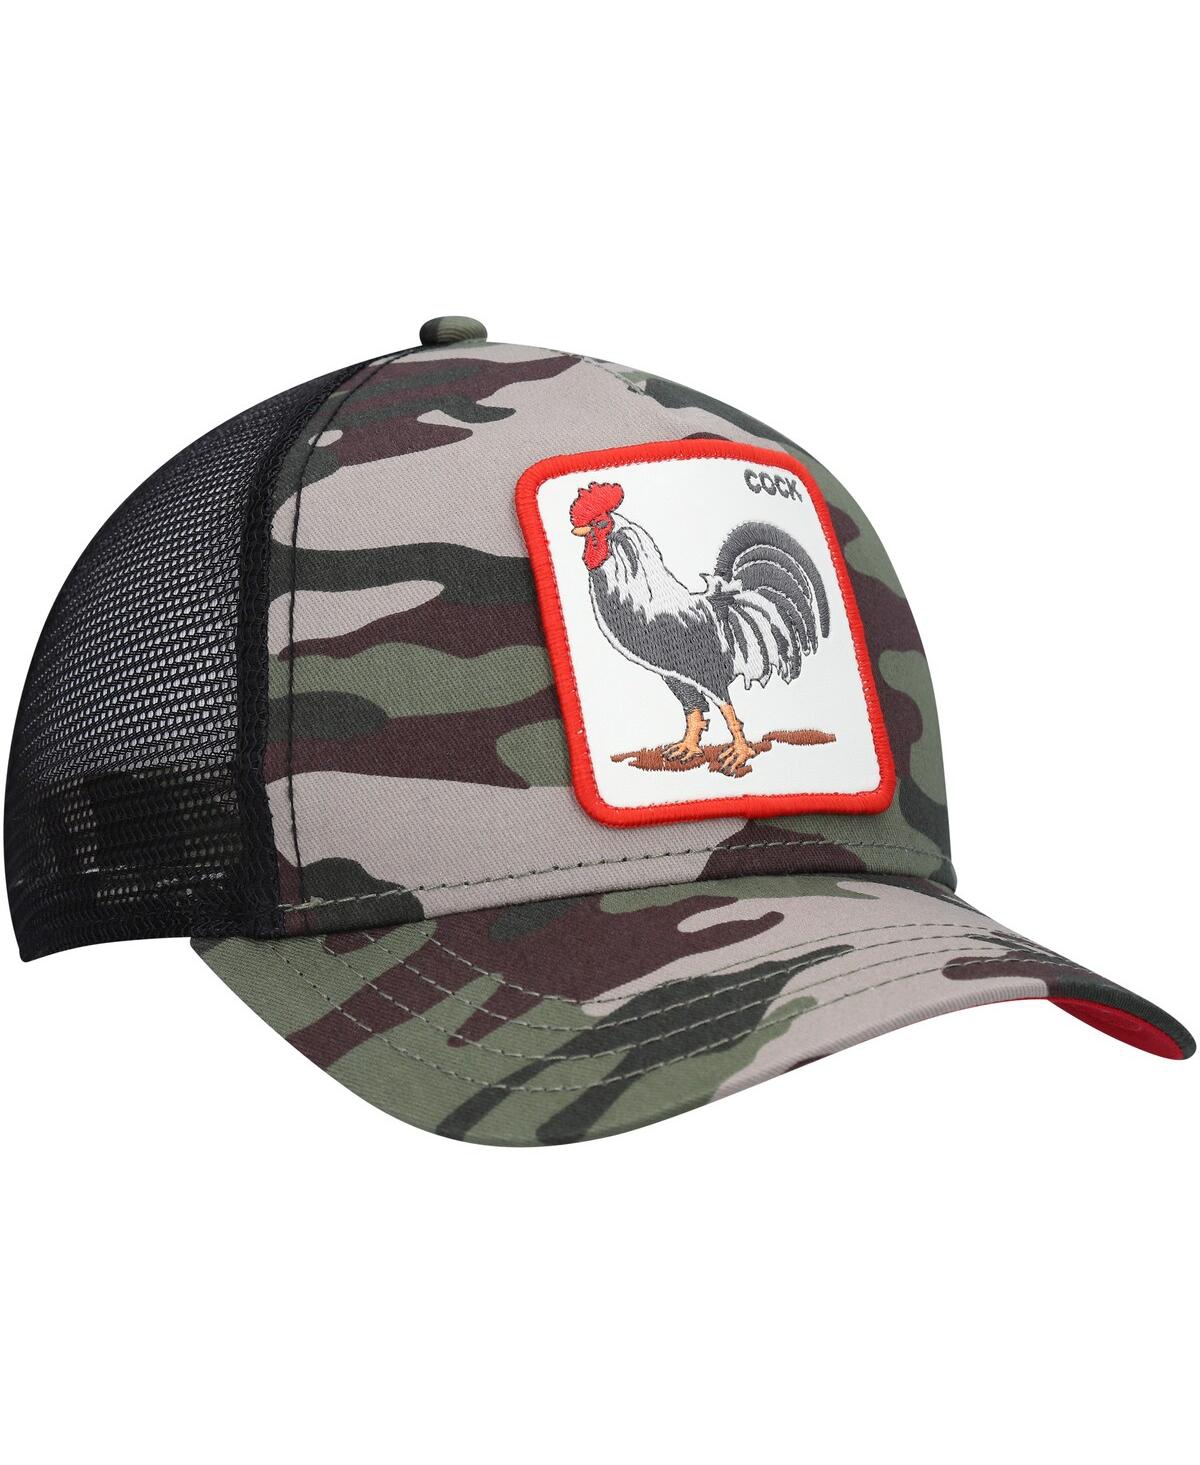 Shop Goorin Bros Men's Camo The Rooster Trucker Adjustable Hat